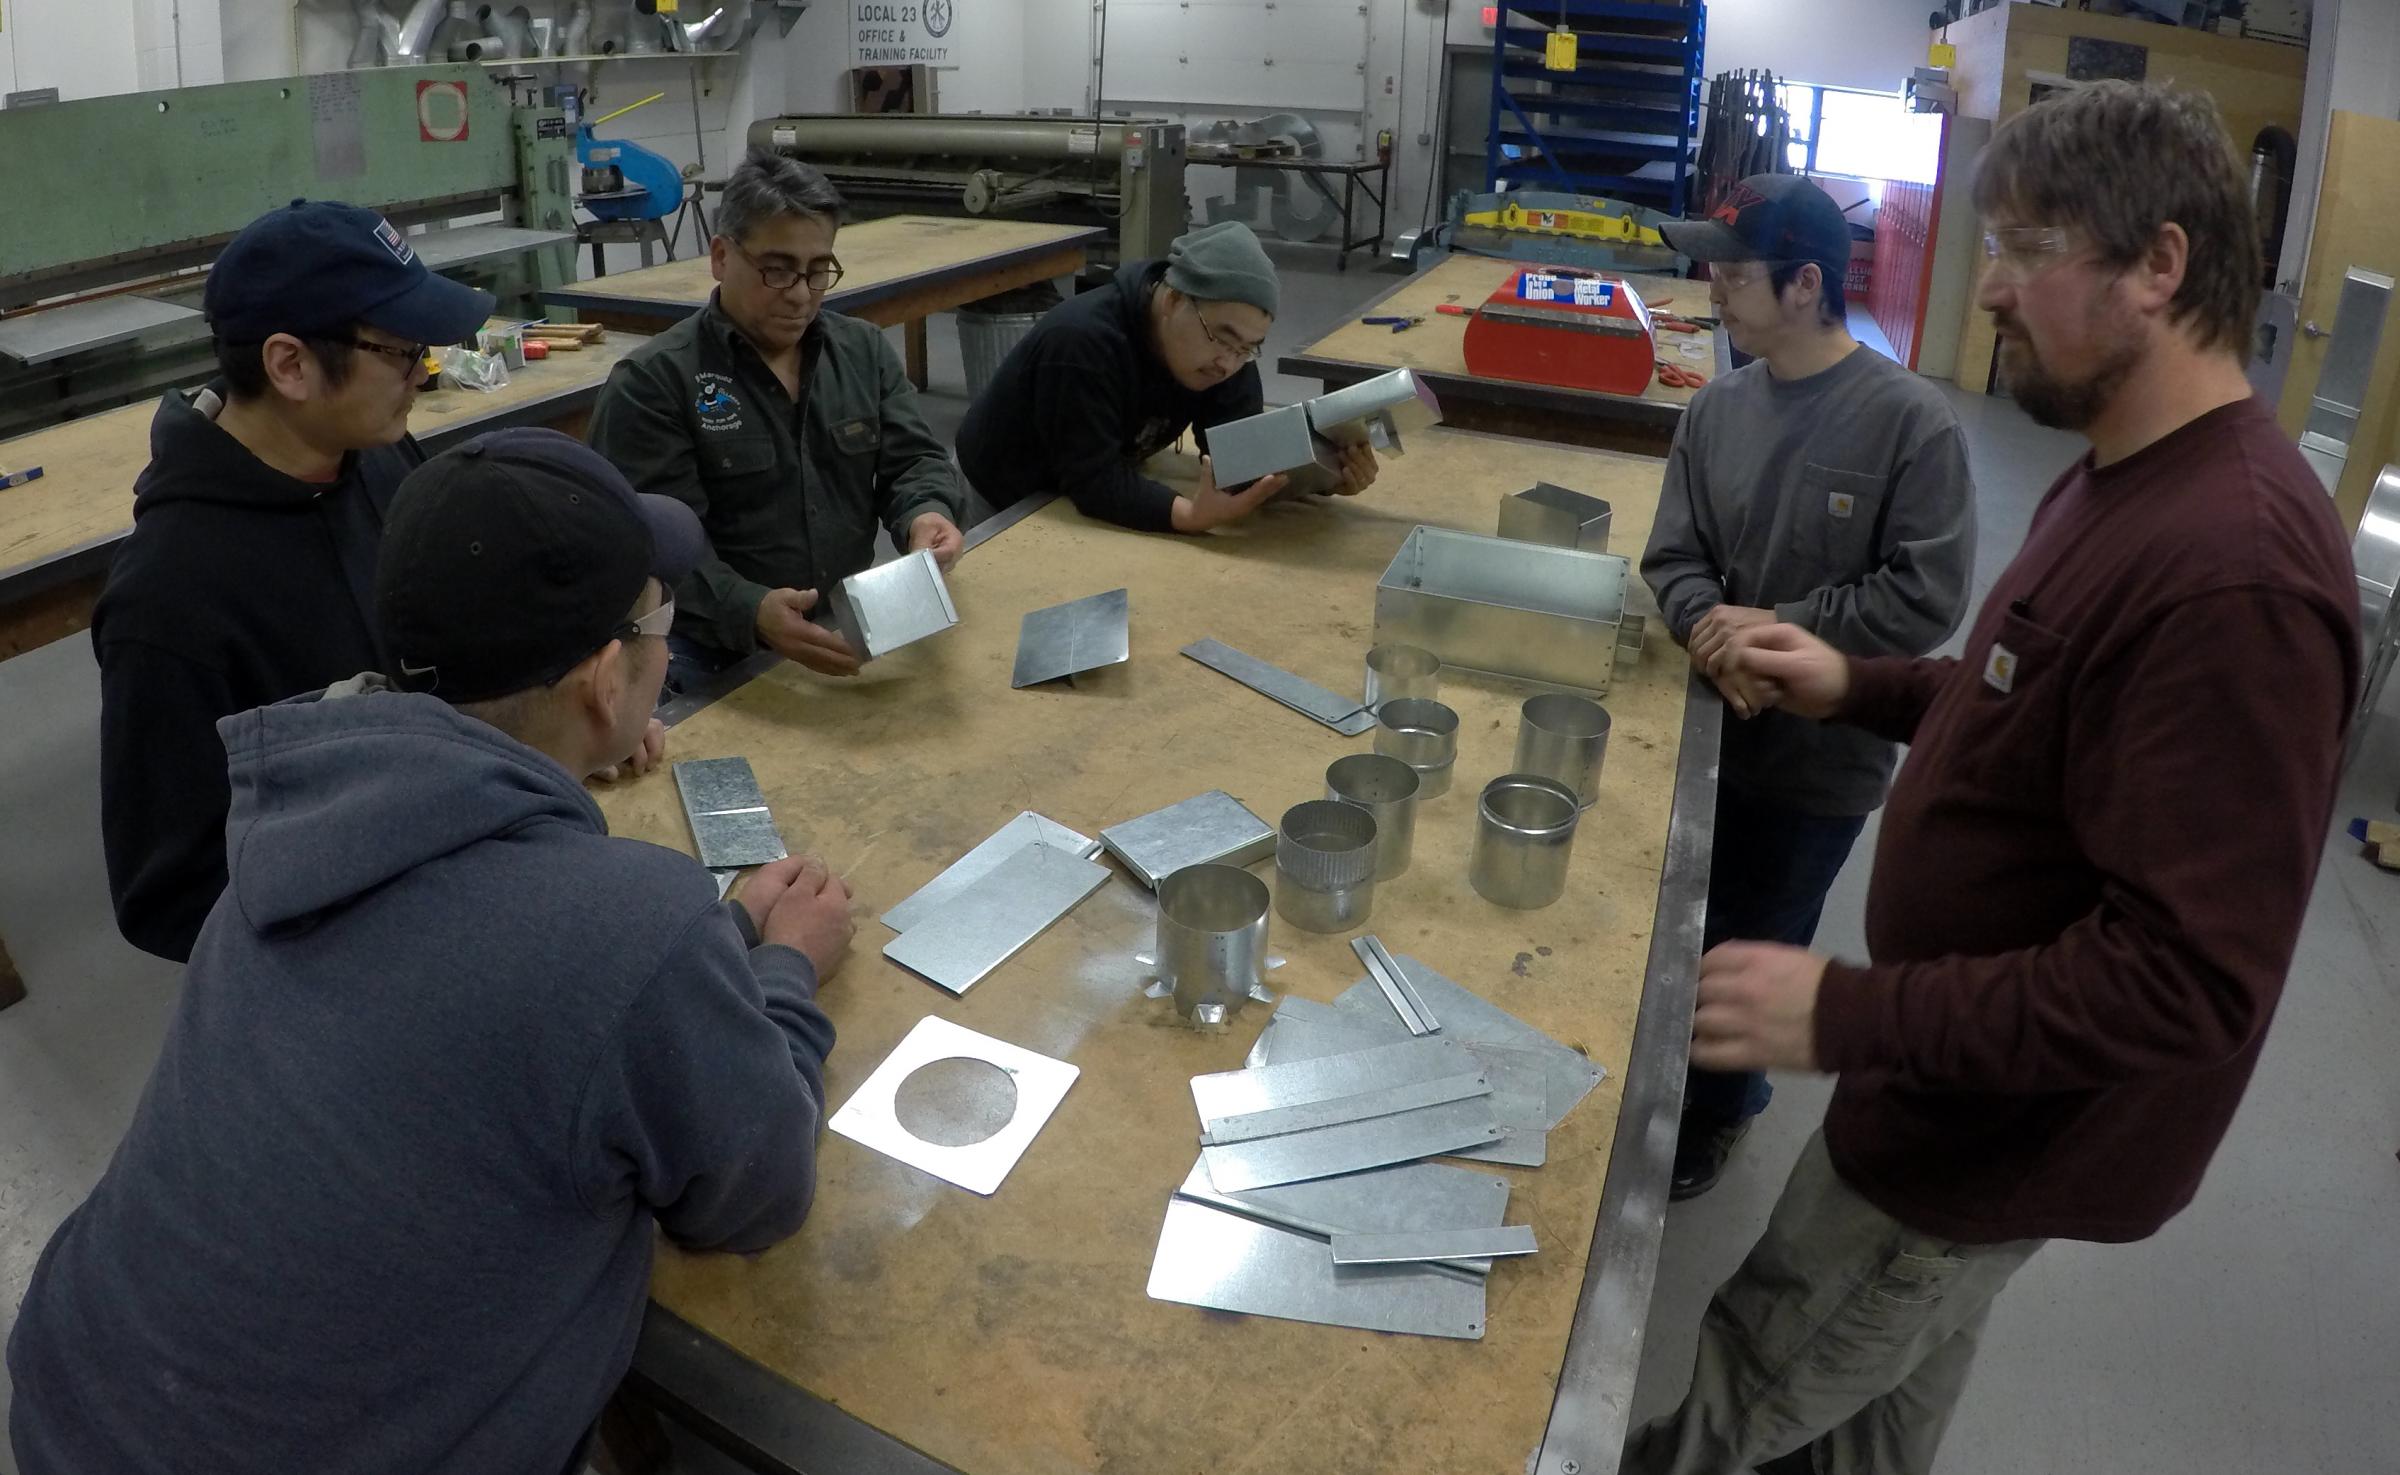 Sheet metal apprenticeship organized in rural Alaska - Alaska Public Radio Network